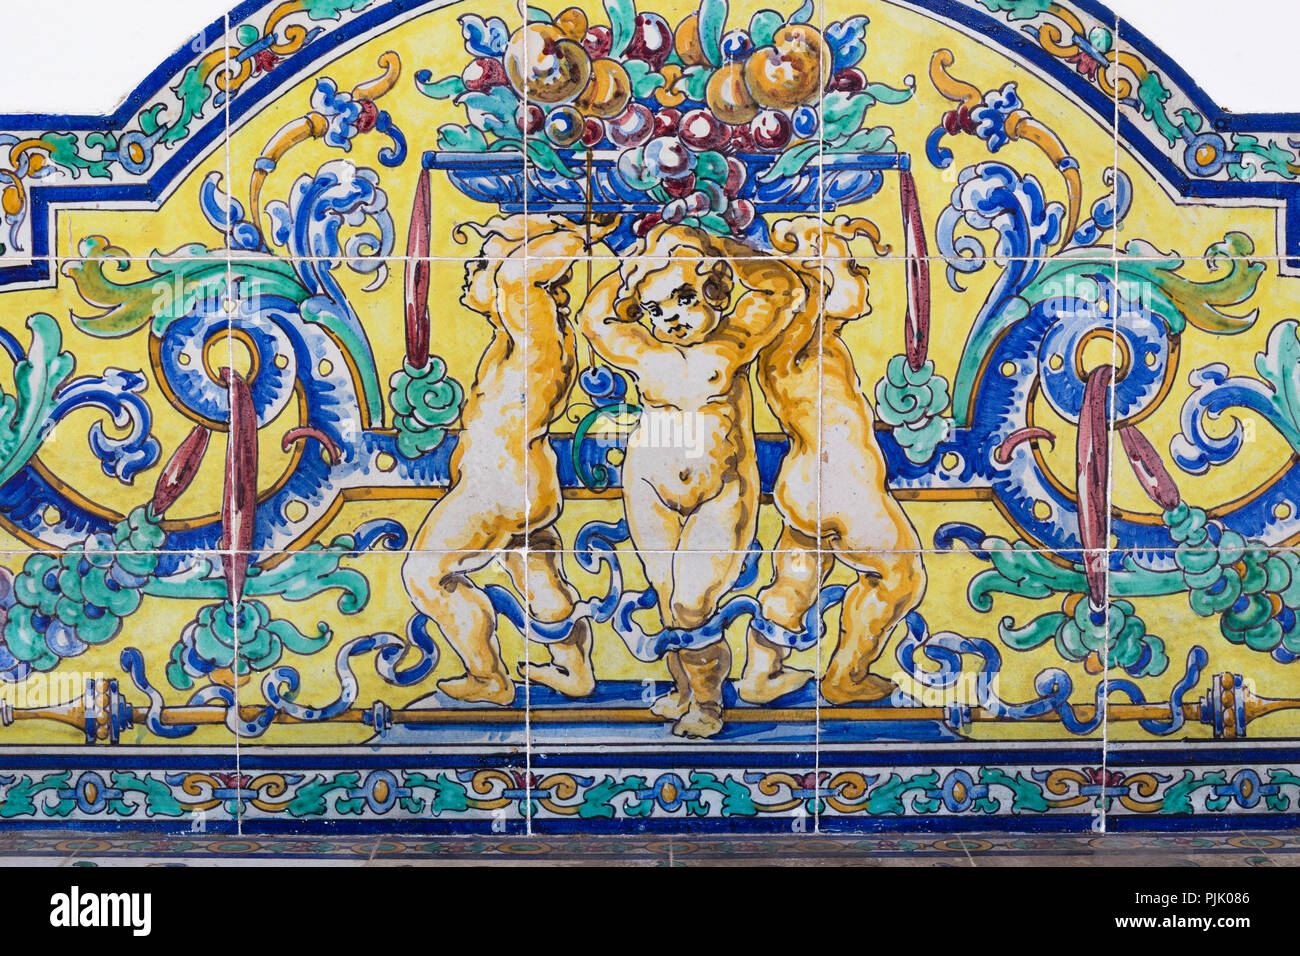 Les carreaux en céramique de Trois putti. Datant de la fin du xixe siècle. Malaga, Espagne. Banque D'Images